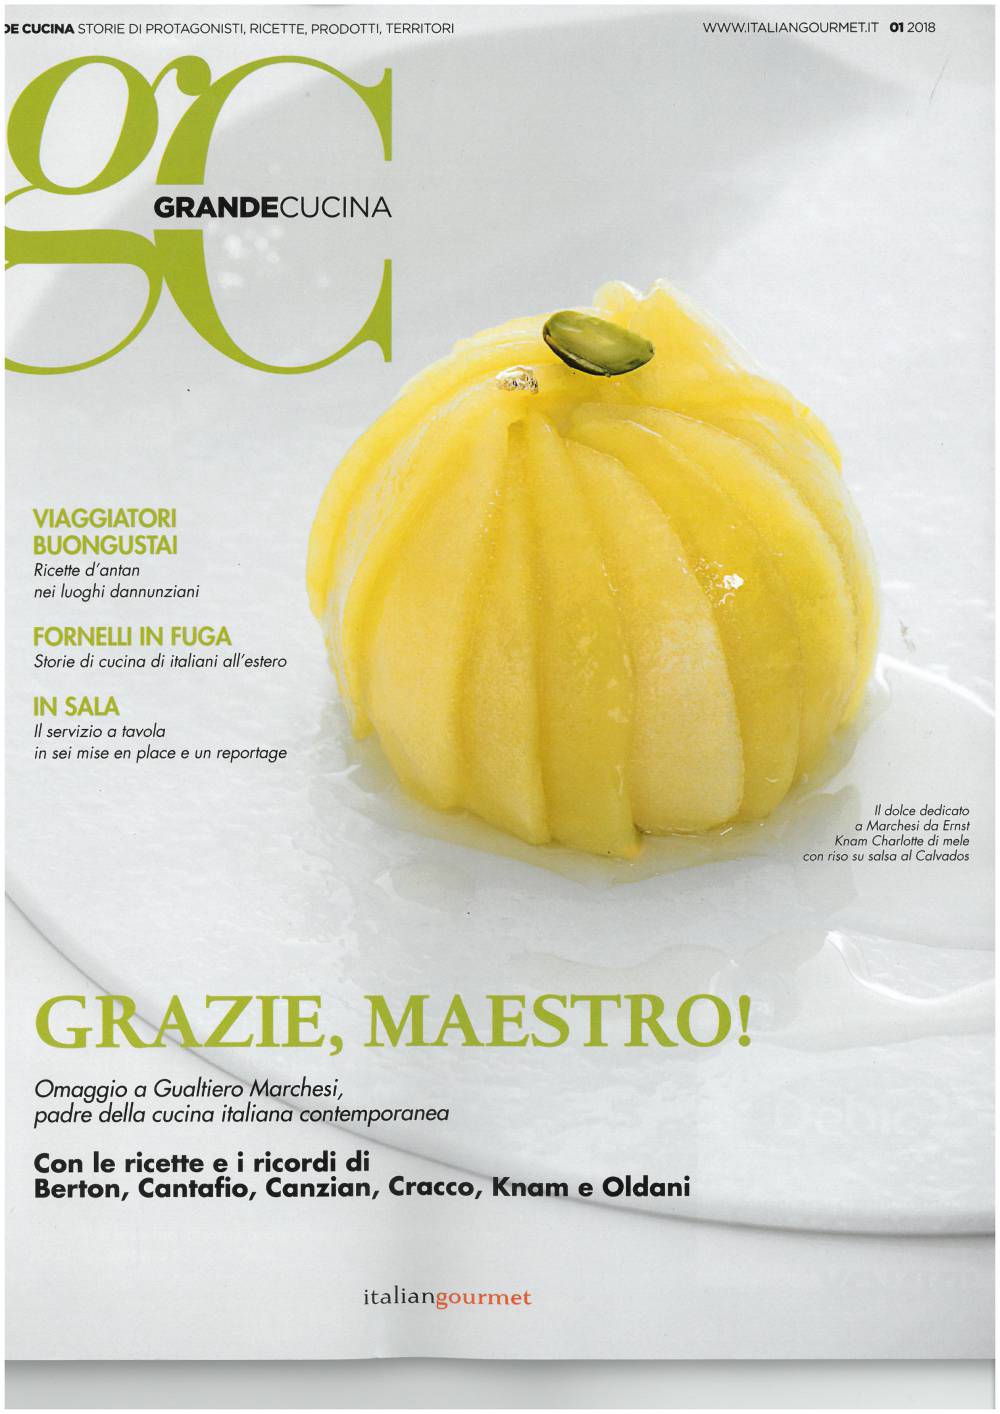 Grande Cucina talks about waveco®